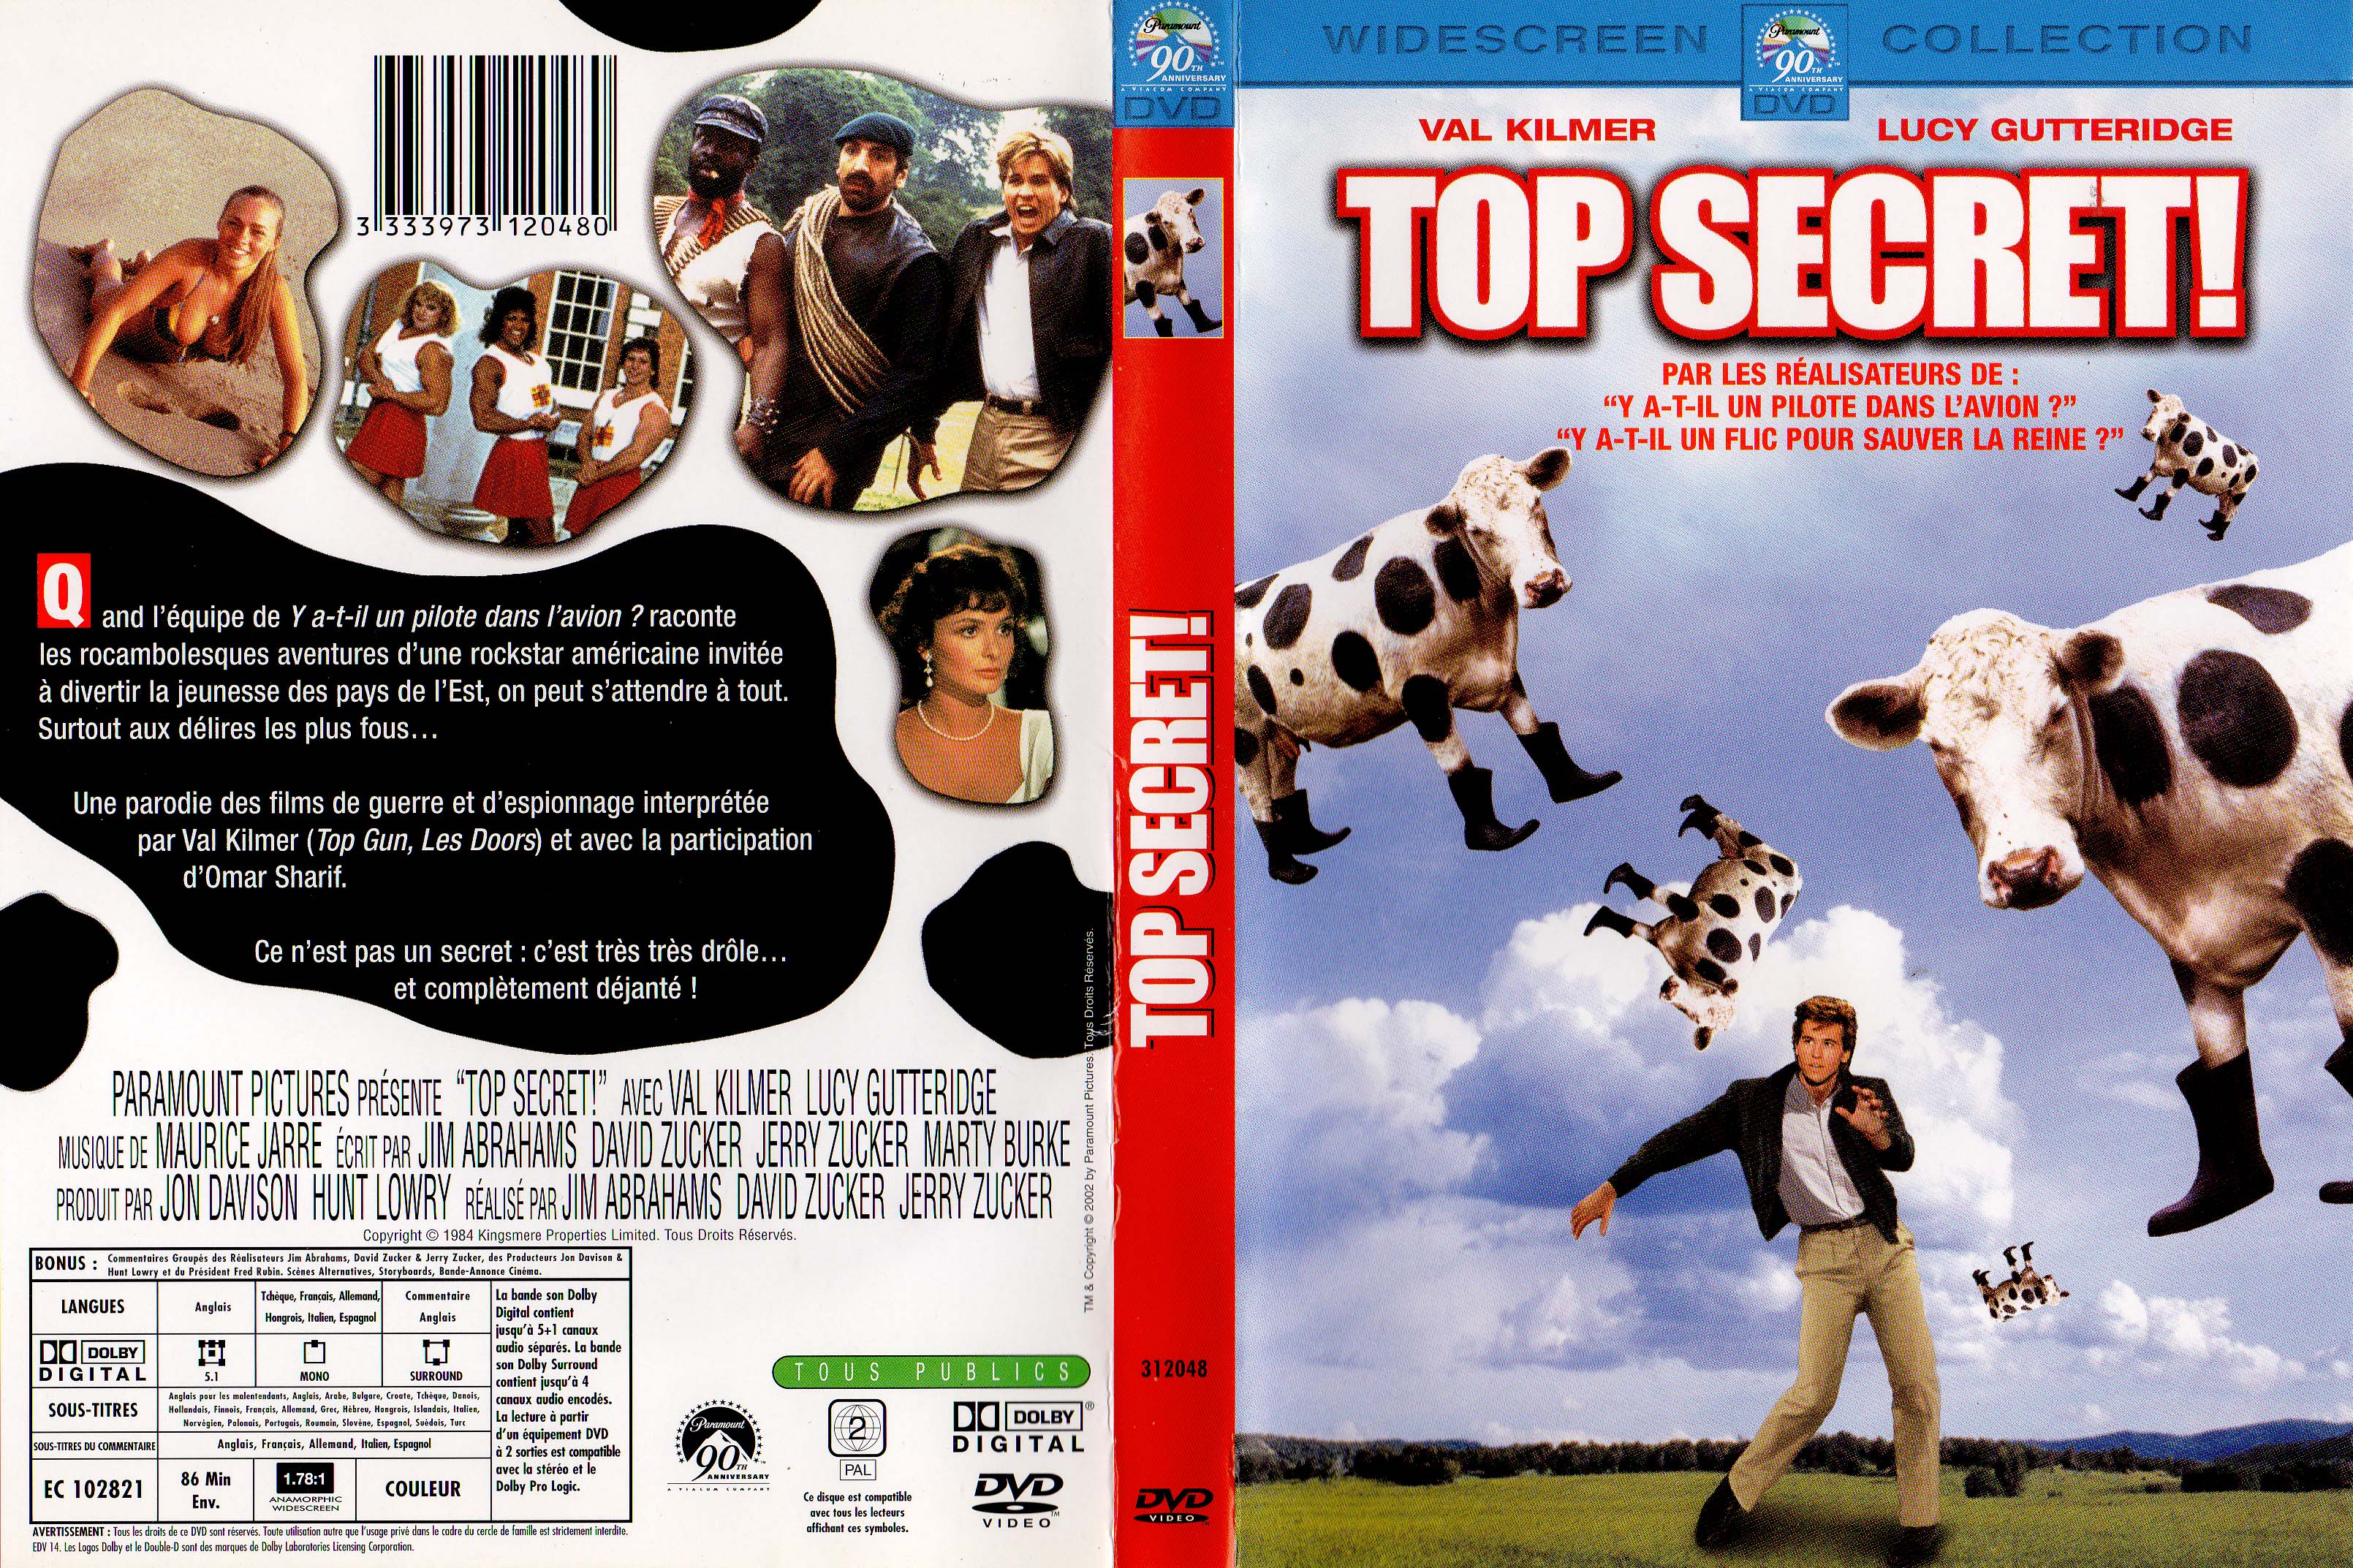 Jaquette DVD Top secret v2